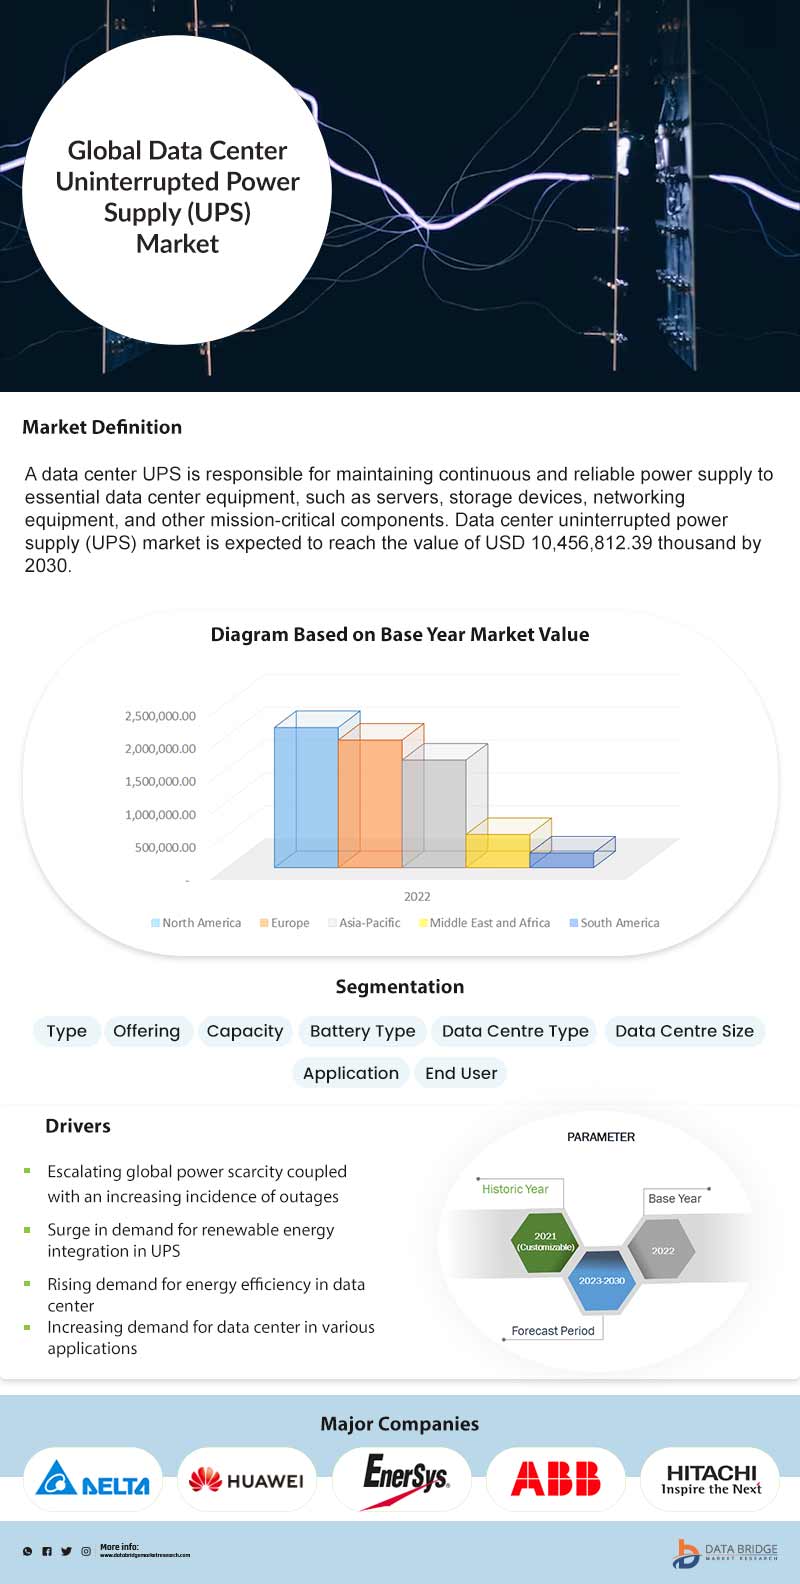 Data Center Uninterruptable Power Supply (UPS) Market